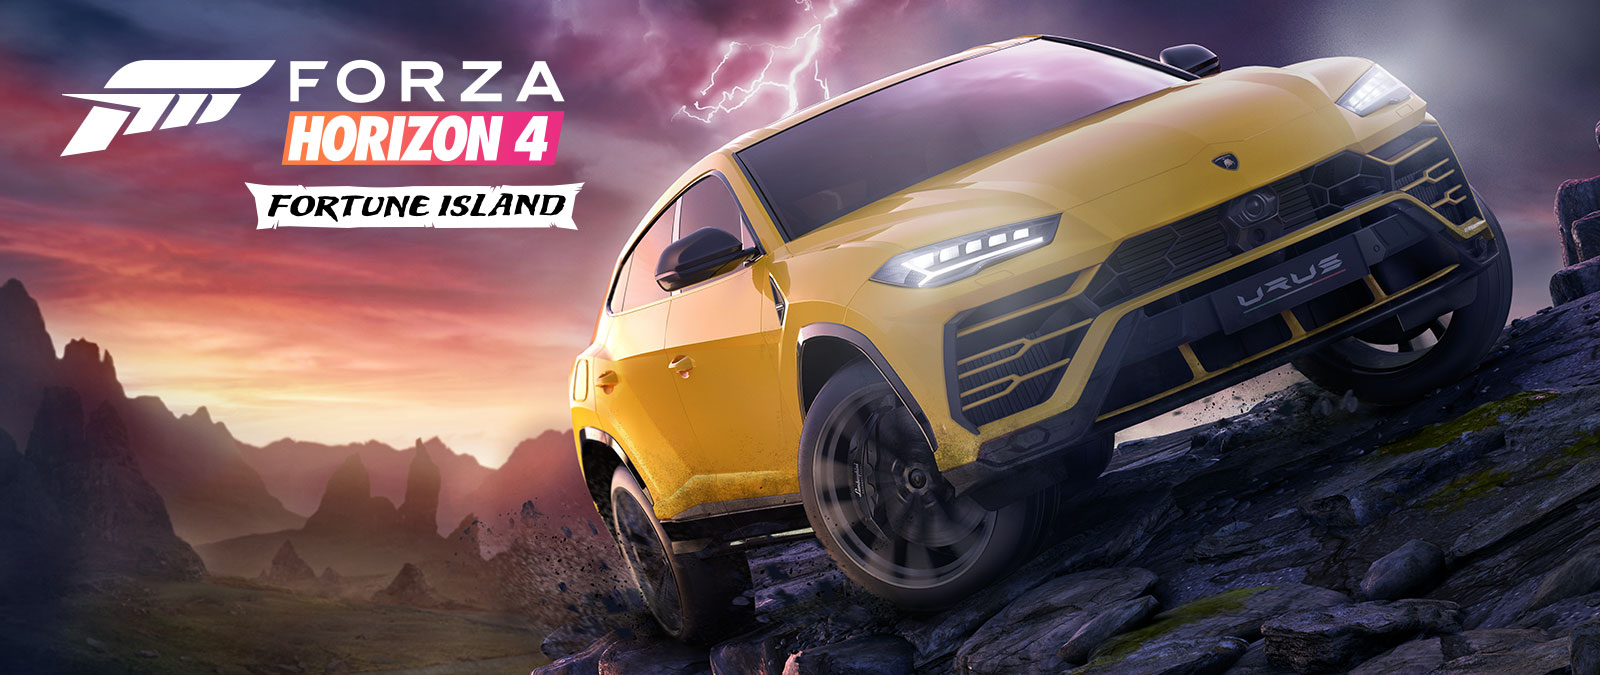 Forza Horizon 4 Fortune Island, um Lamborghini Urus Amarelo a conduzir em terreno rigoroso com um relâmpago em plano de fundo